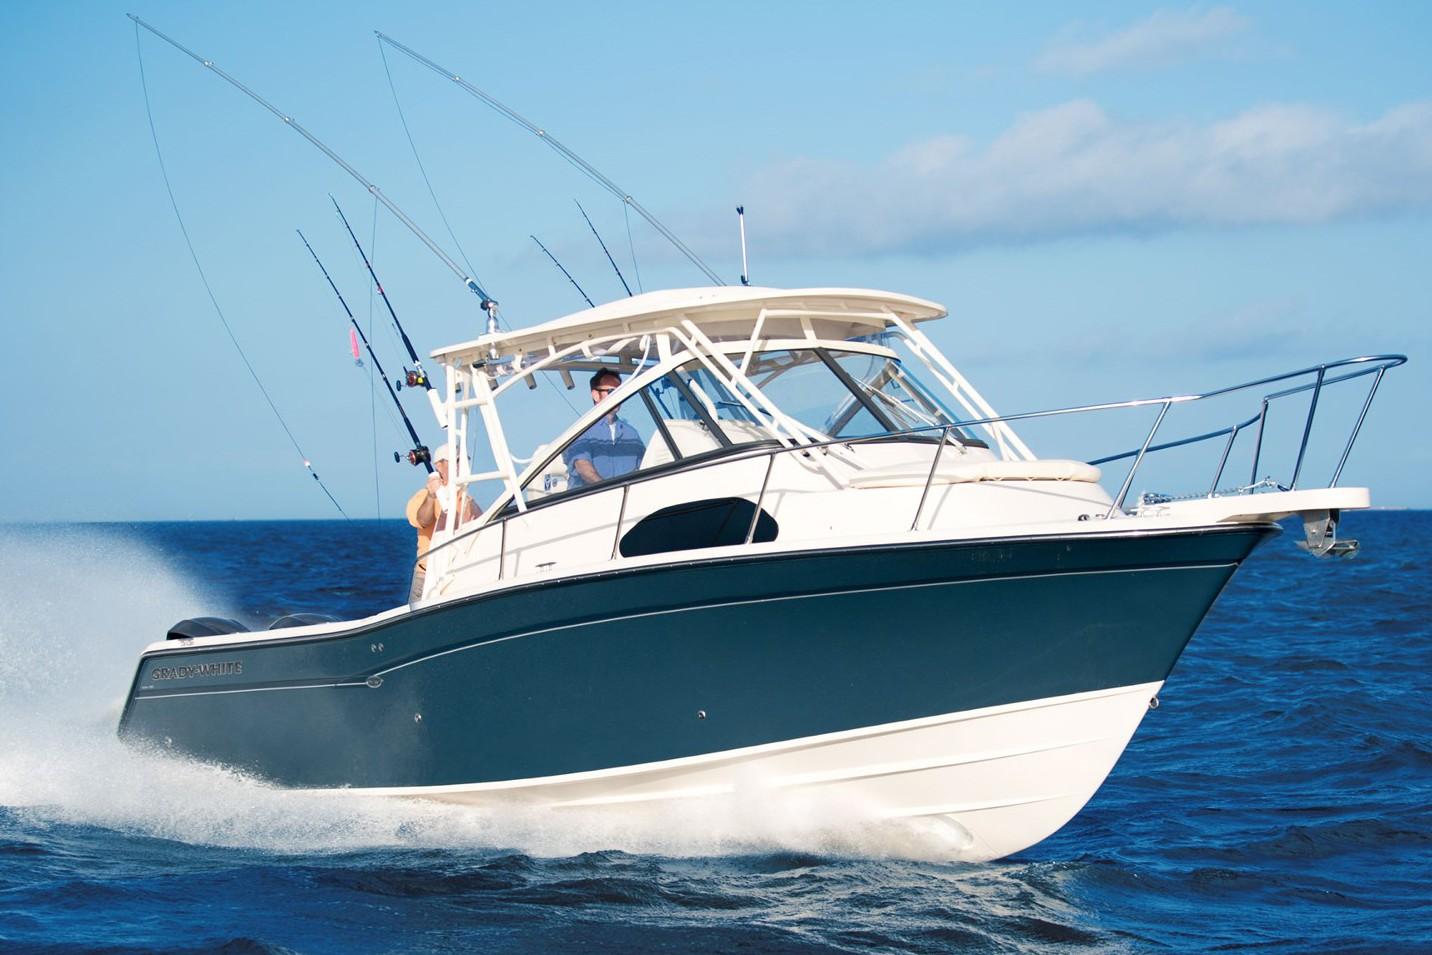 2019 grady-white marlin 300, - boats.com